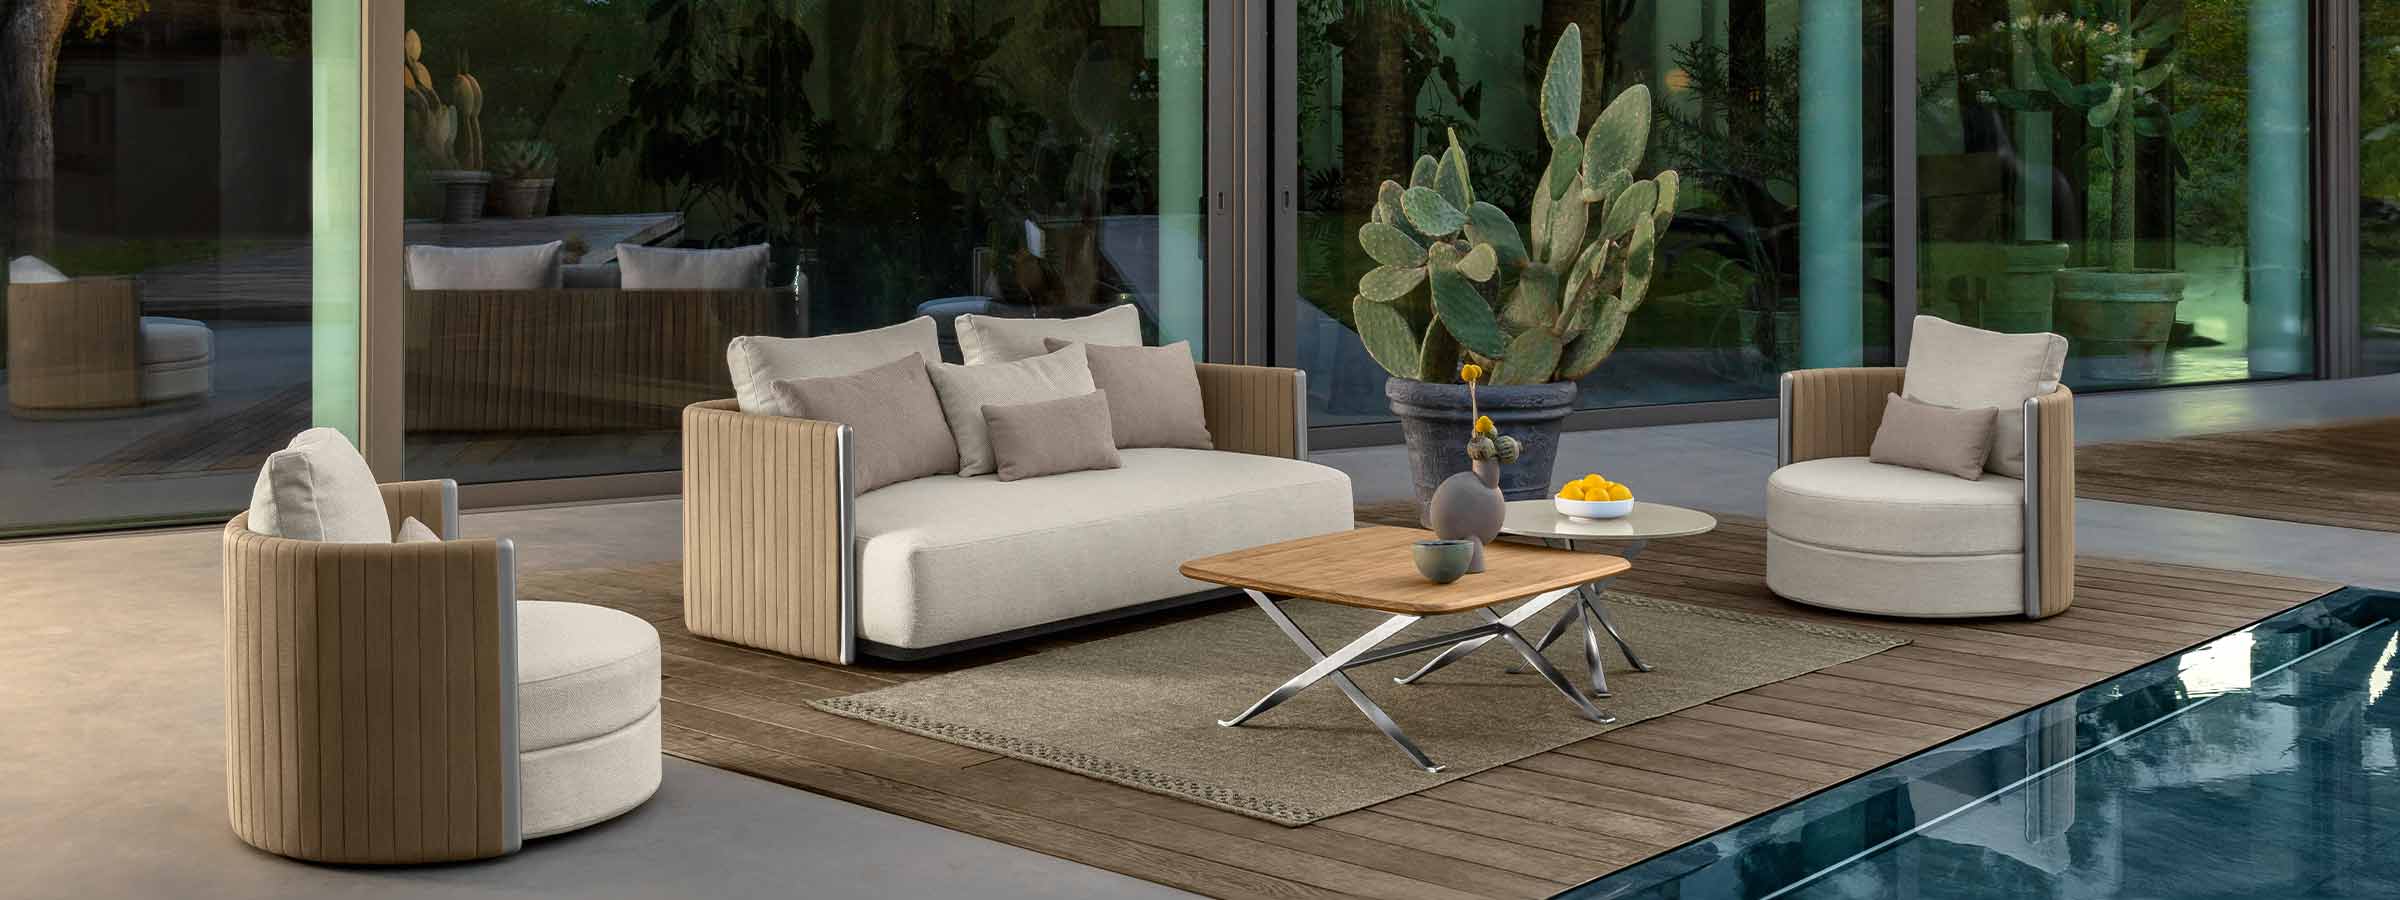 OUTDOOR Italian Designer Furniture - Design Italy